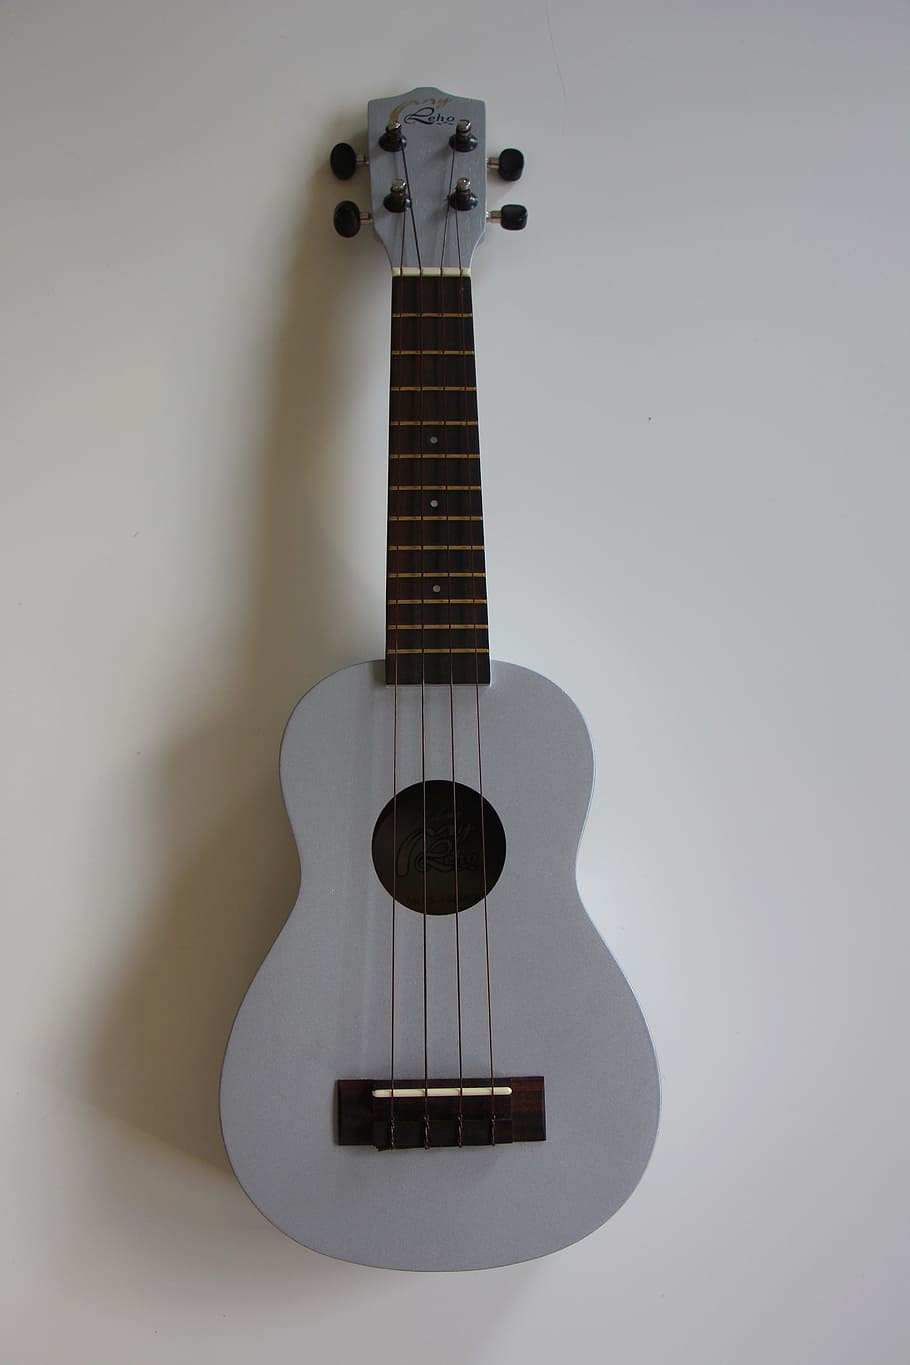 ukulele abu-abu, ukulele, instrumen, musik, halaman, alat musik, soundbody, abu-abu, alat musik gesek, gitar